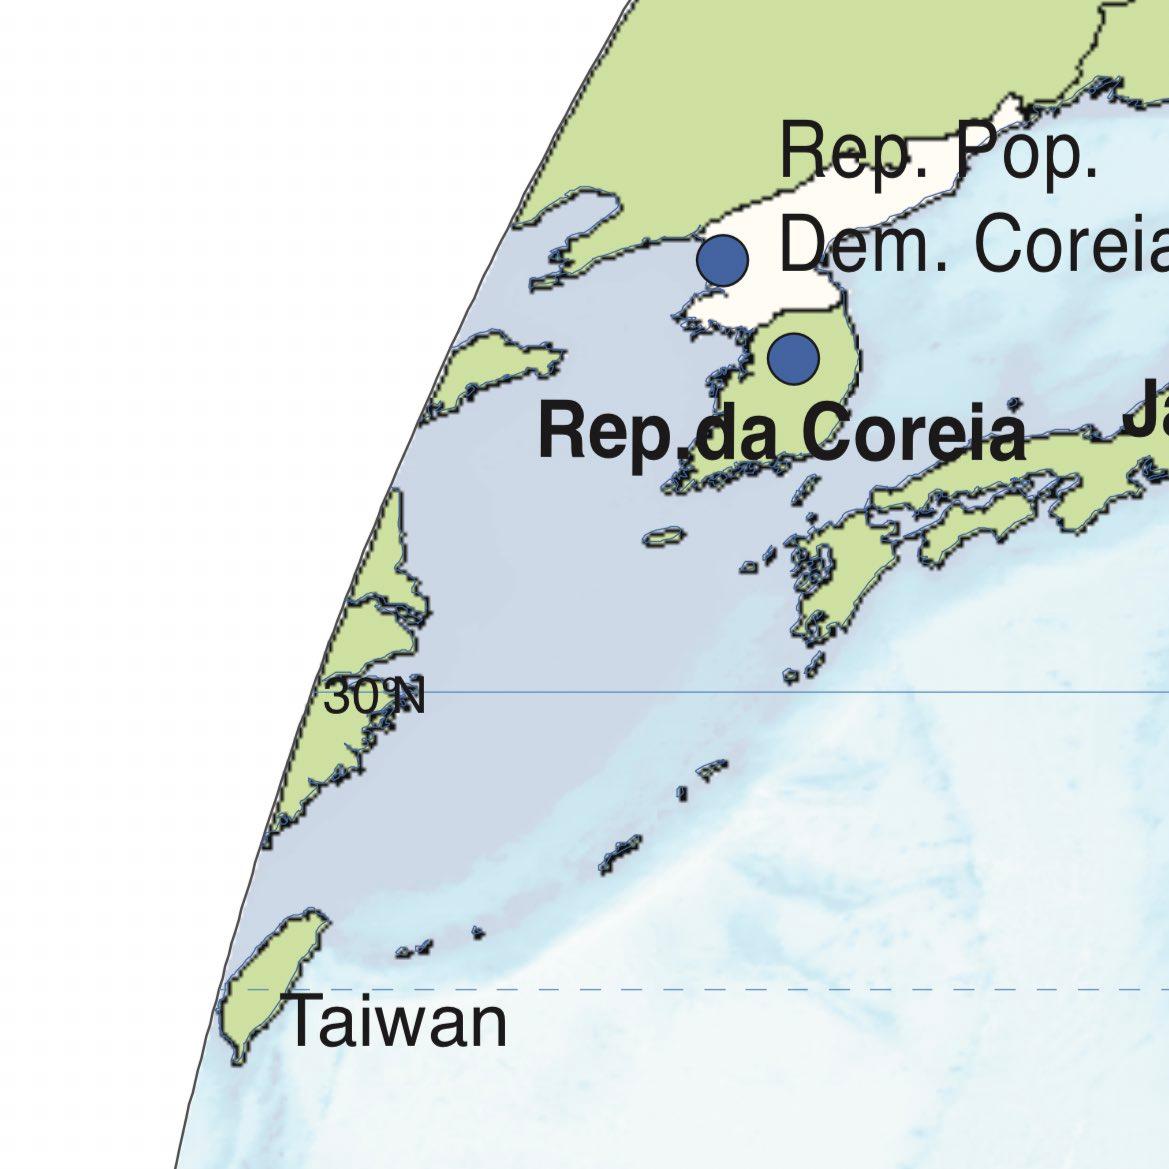 Taiwan aparece como parte do território da China